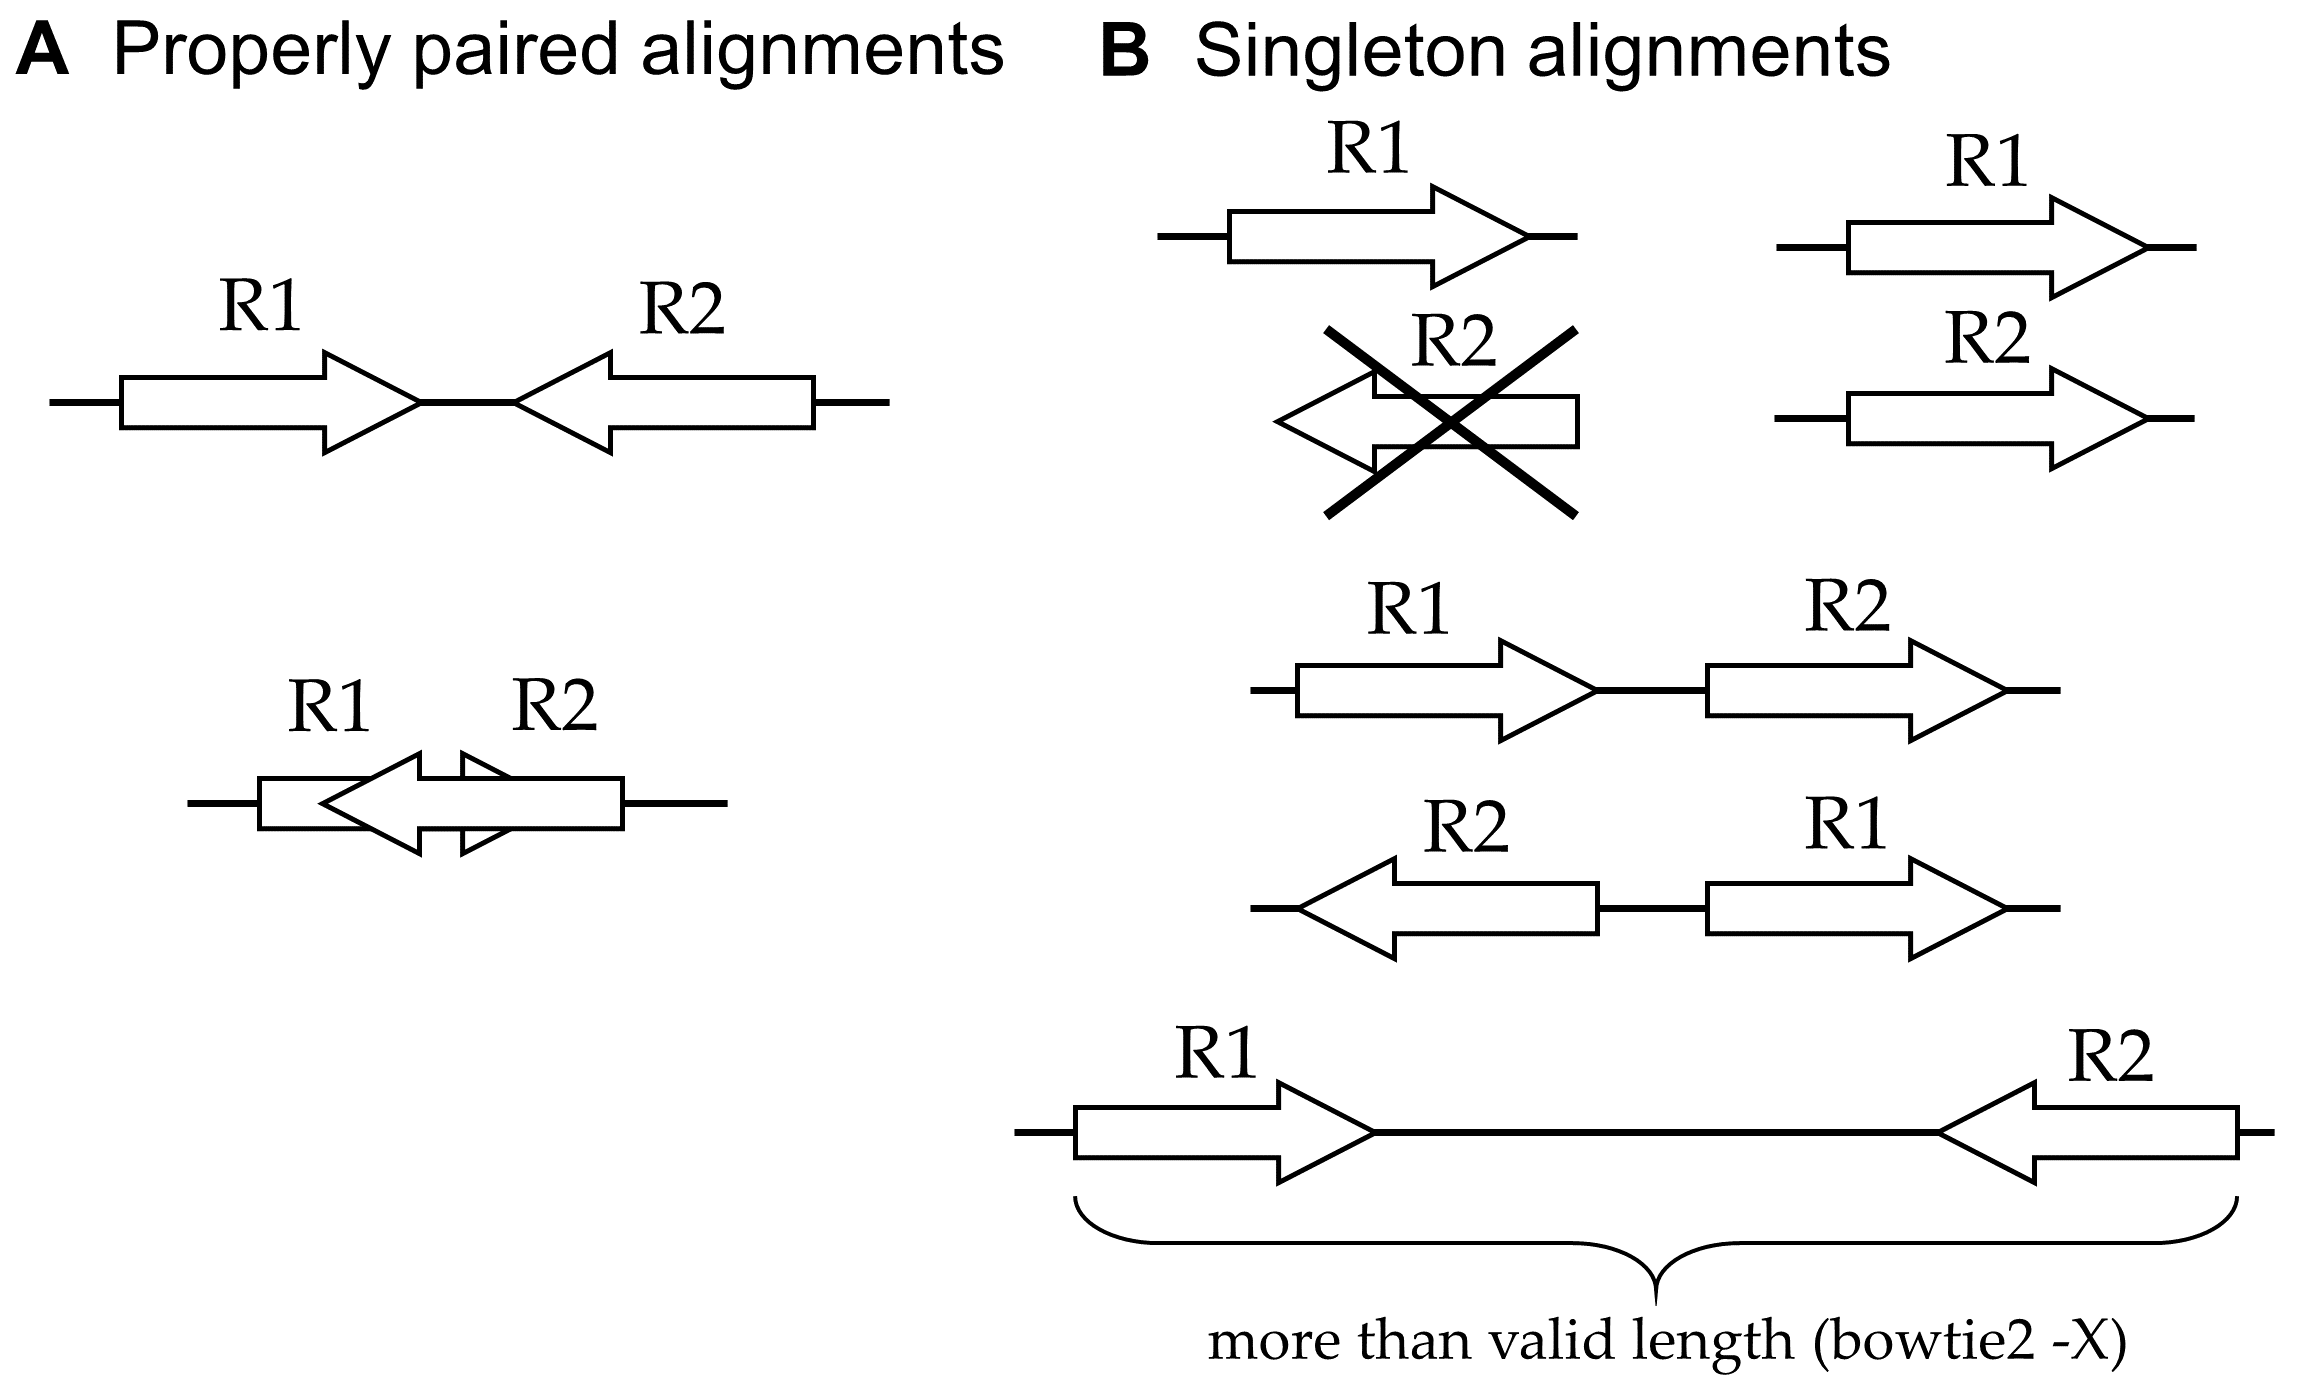 Alignment types